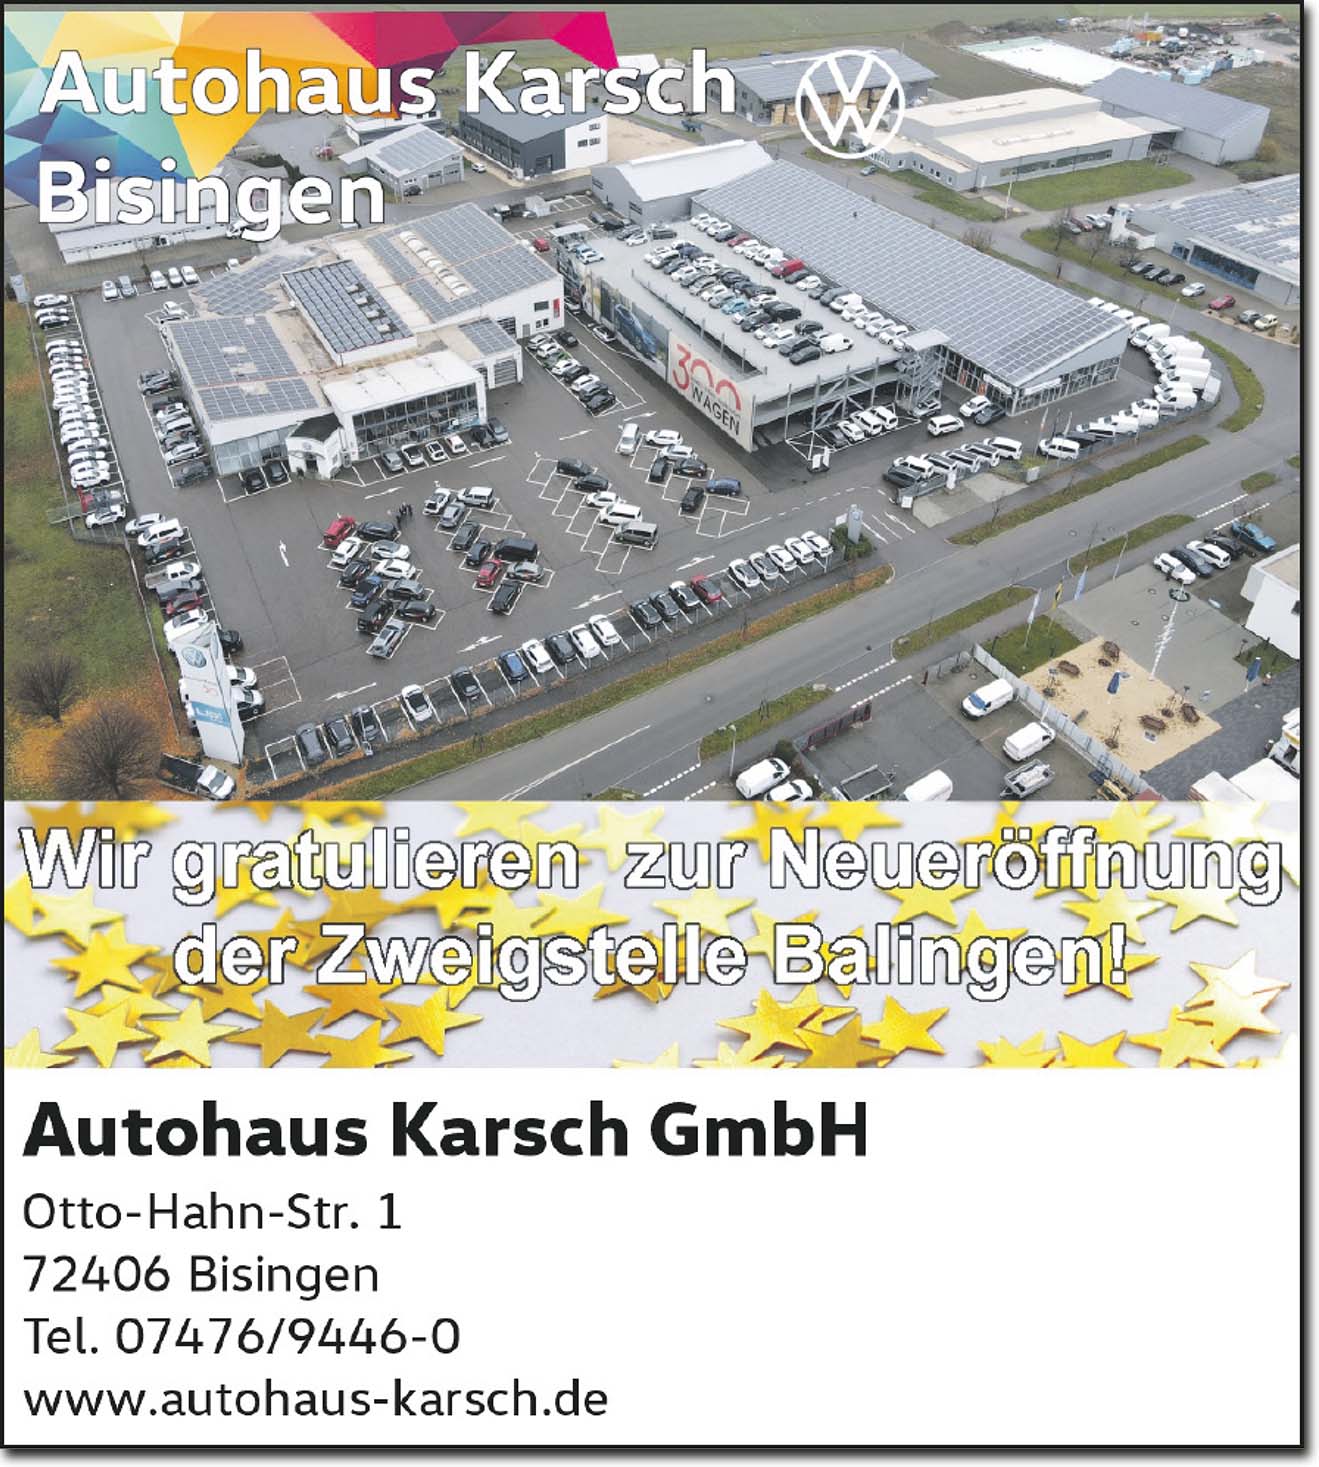 Autohaus Karsch GmbH